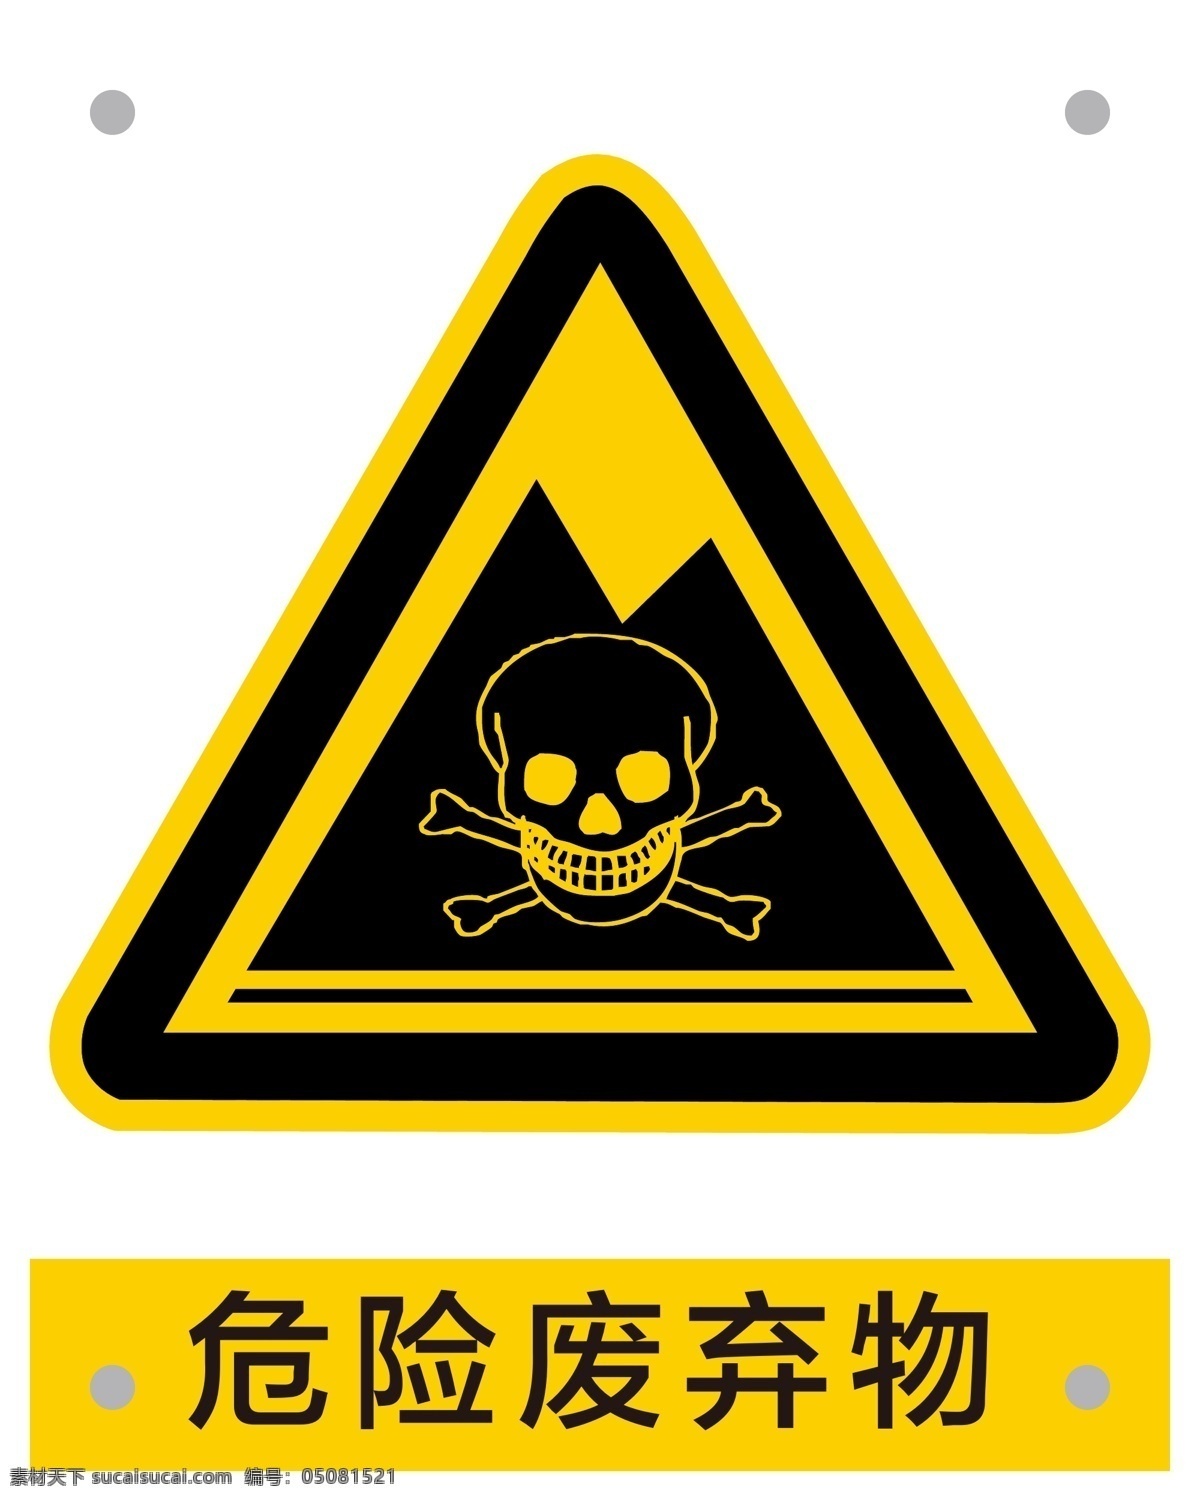 危险 废弃物 安全 标识 安全标识 警告标识 危险废弃物 危险物品 有毒品 危险情况 矢量 psd源文件